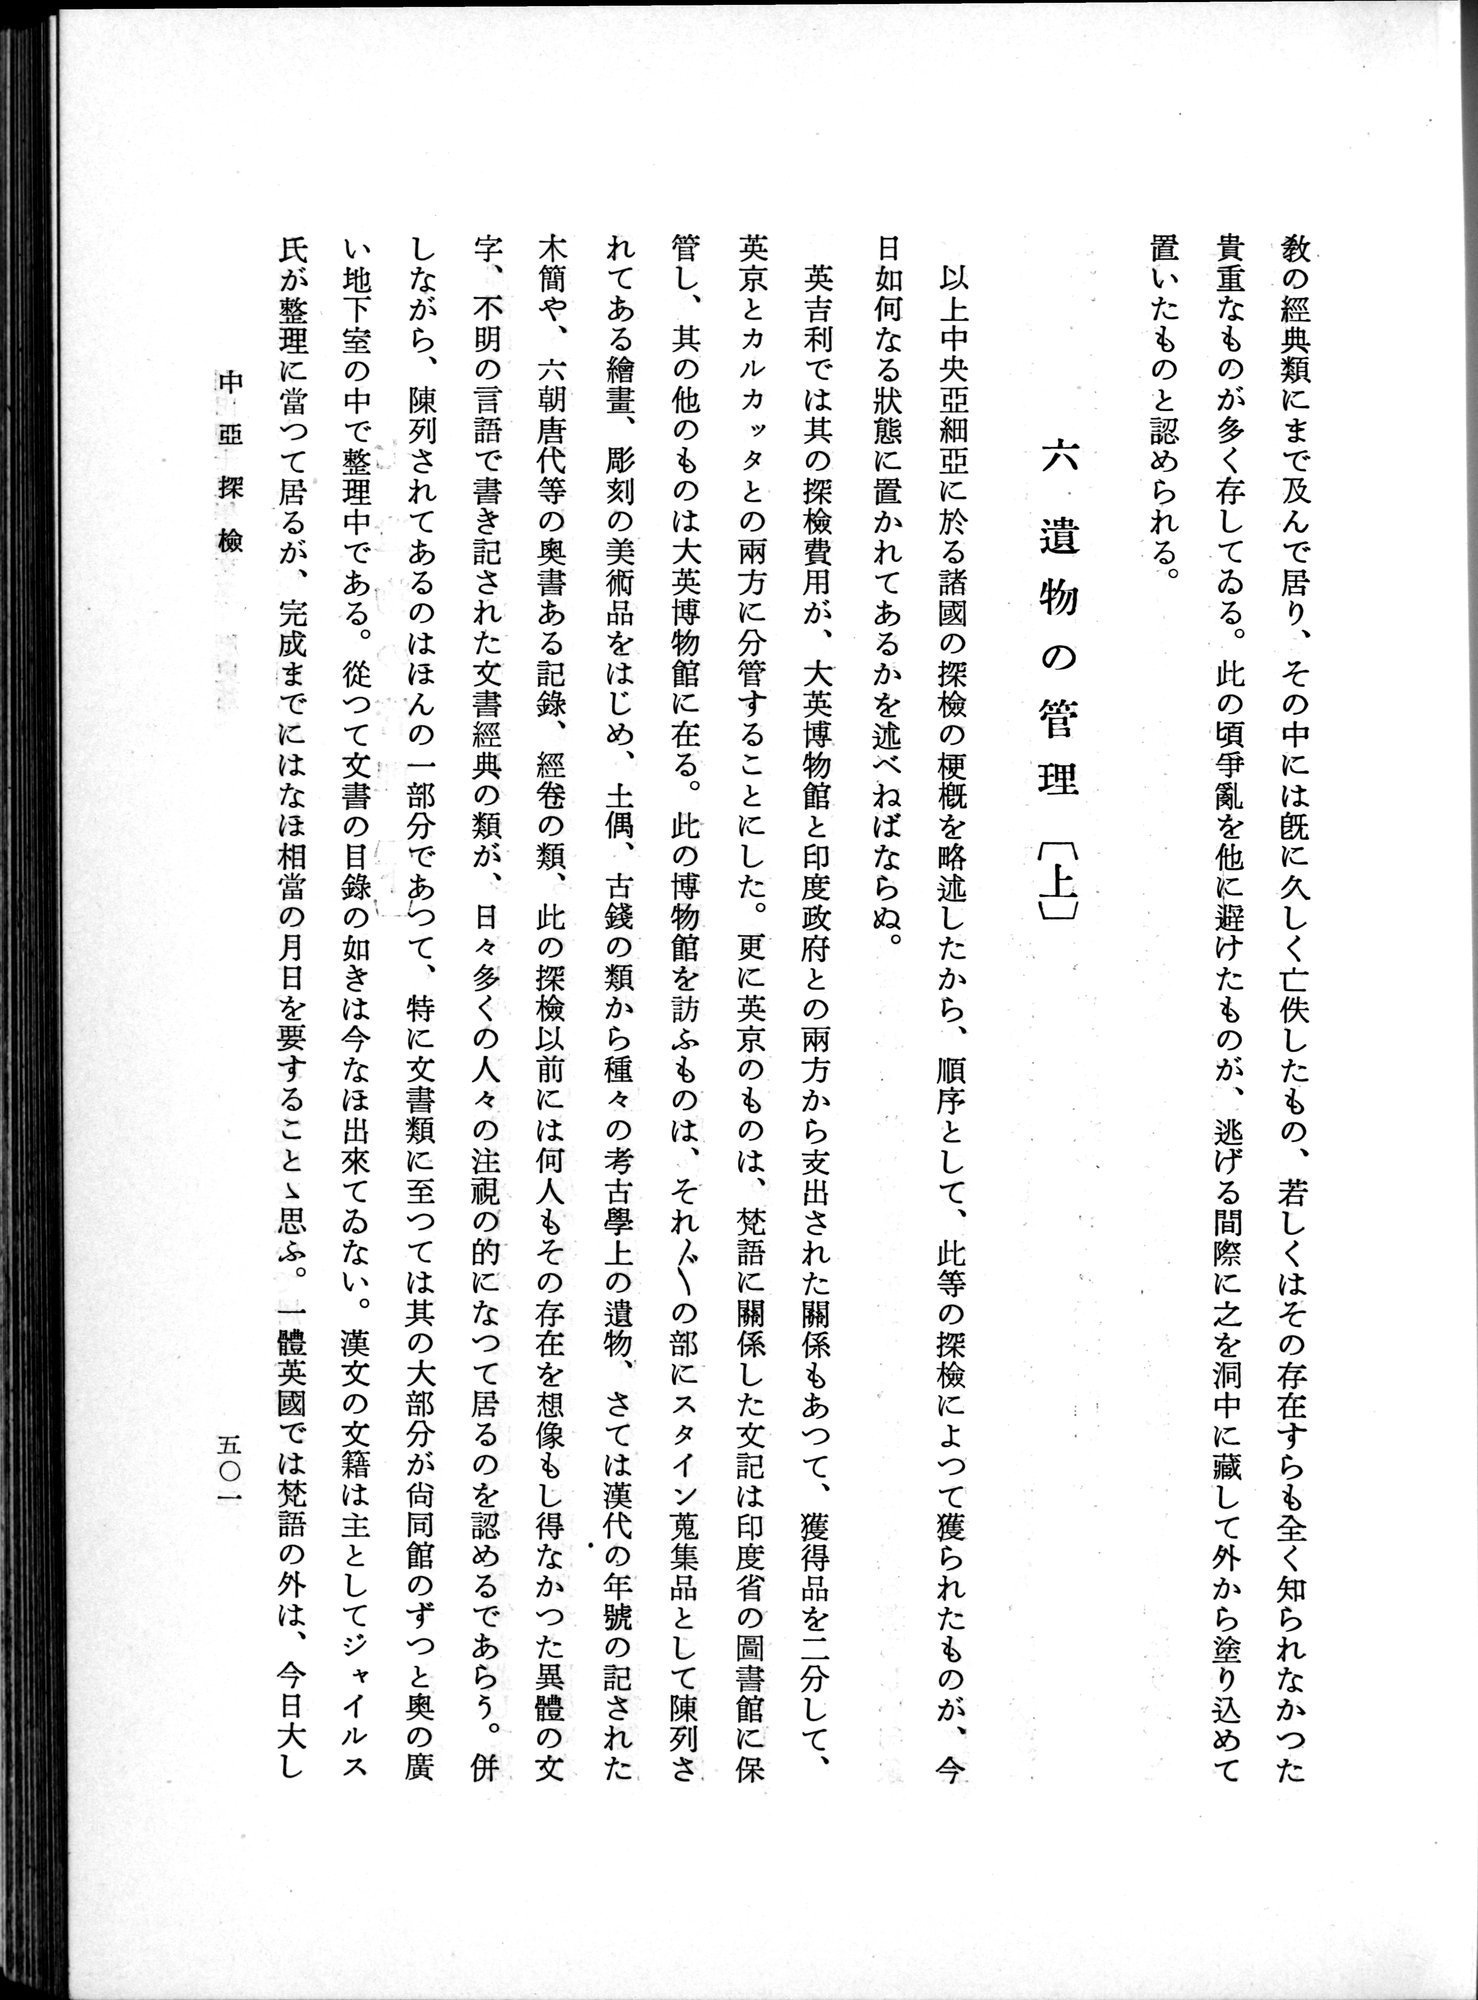 羽田博士史学論文集 : vol.1 / Page 539 (Grayscale High Resolution Image)